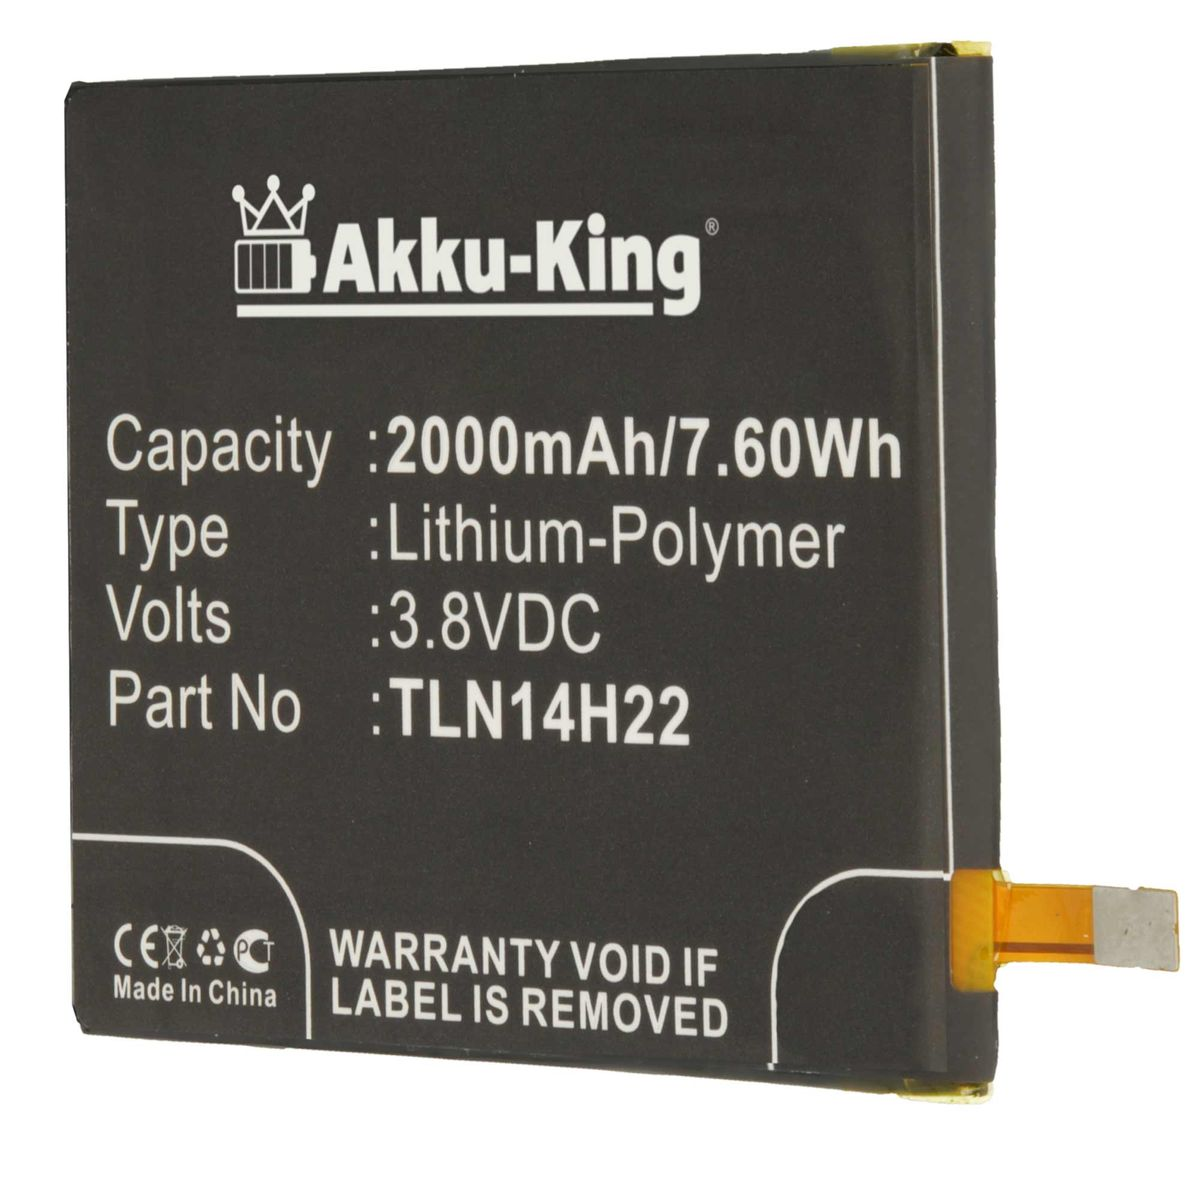 AKKU-KING 2000mAh Li-Polymer Handy-Akku, Wiko kompatibel mit 3.8 TLE14E20 Akku Volt,